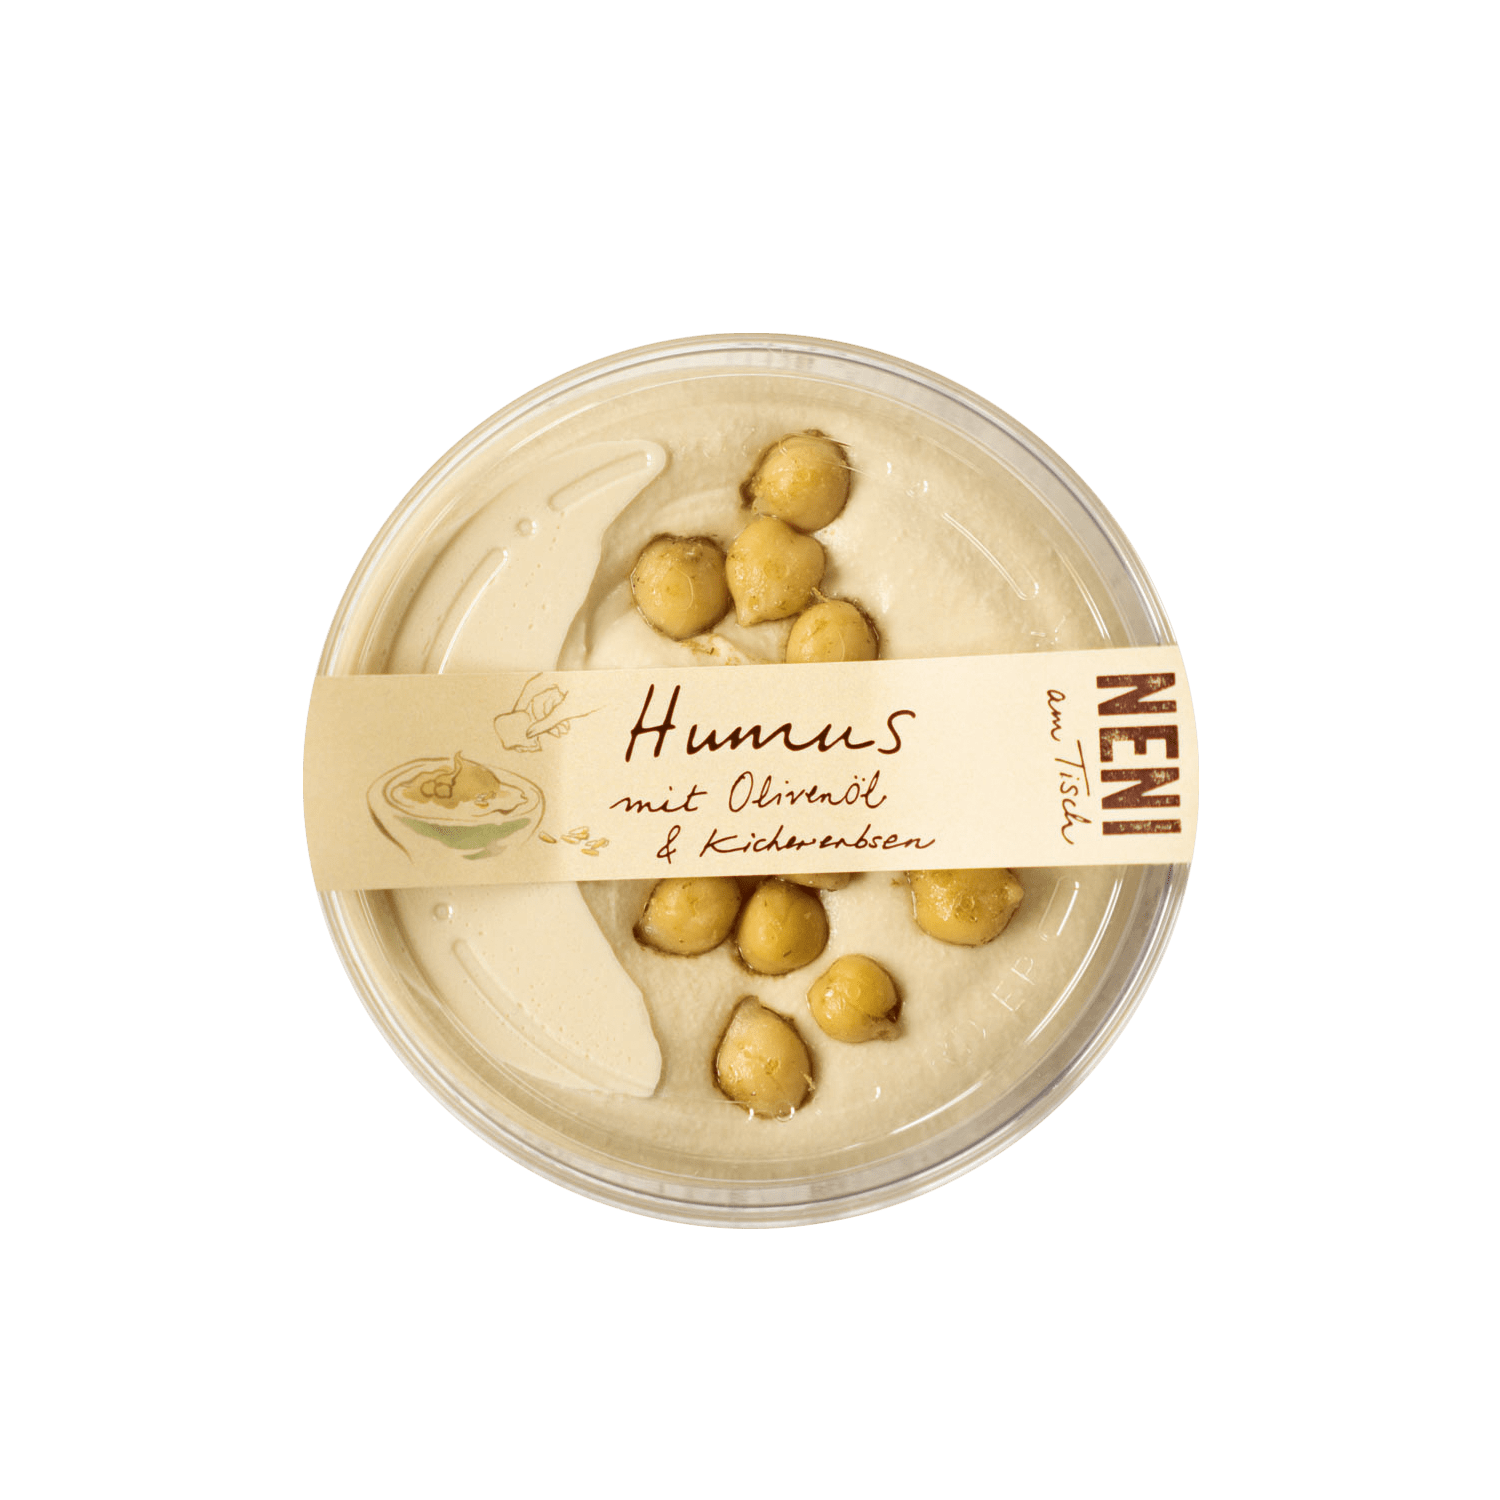 Hummus mit Olivenöl & Kichererbsen, 200g